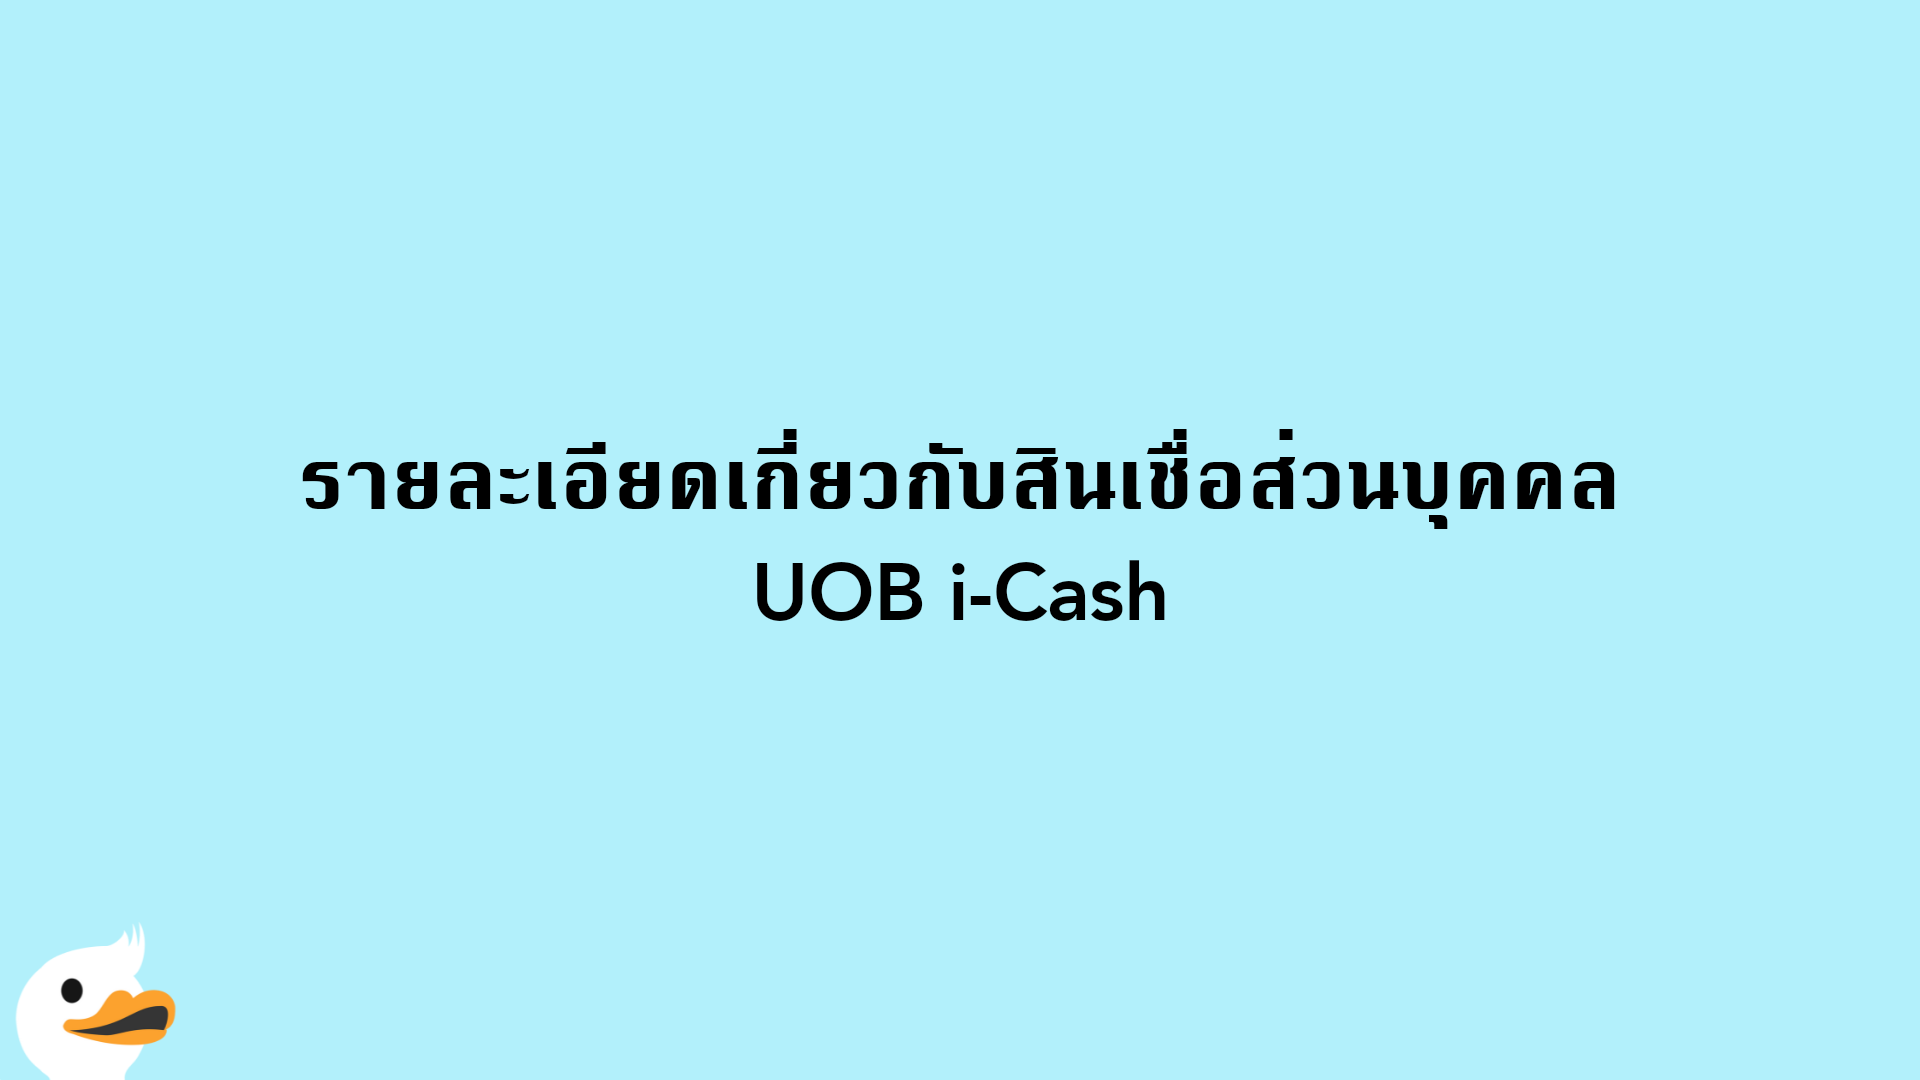 รายละเอียดเกี่ยวกับสินเชื่อส่วนบุคคล UOB i-Cash